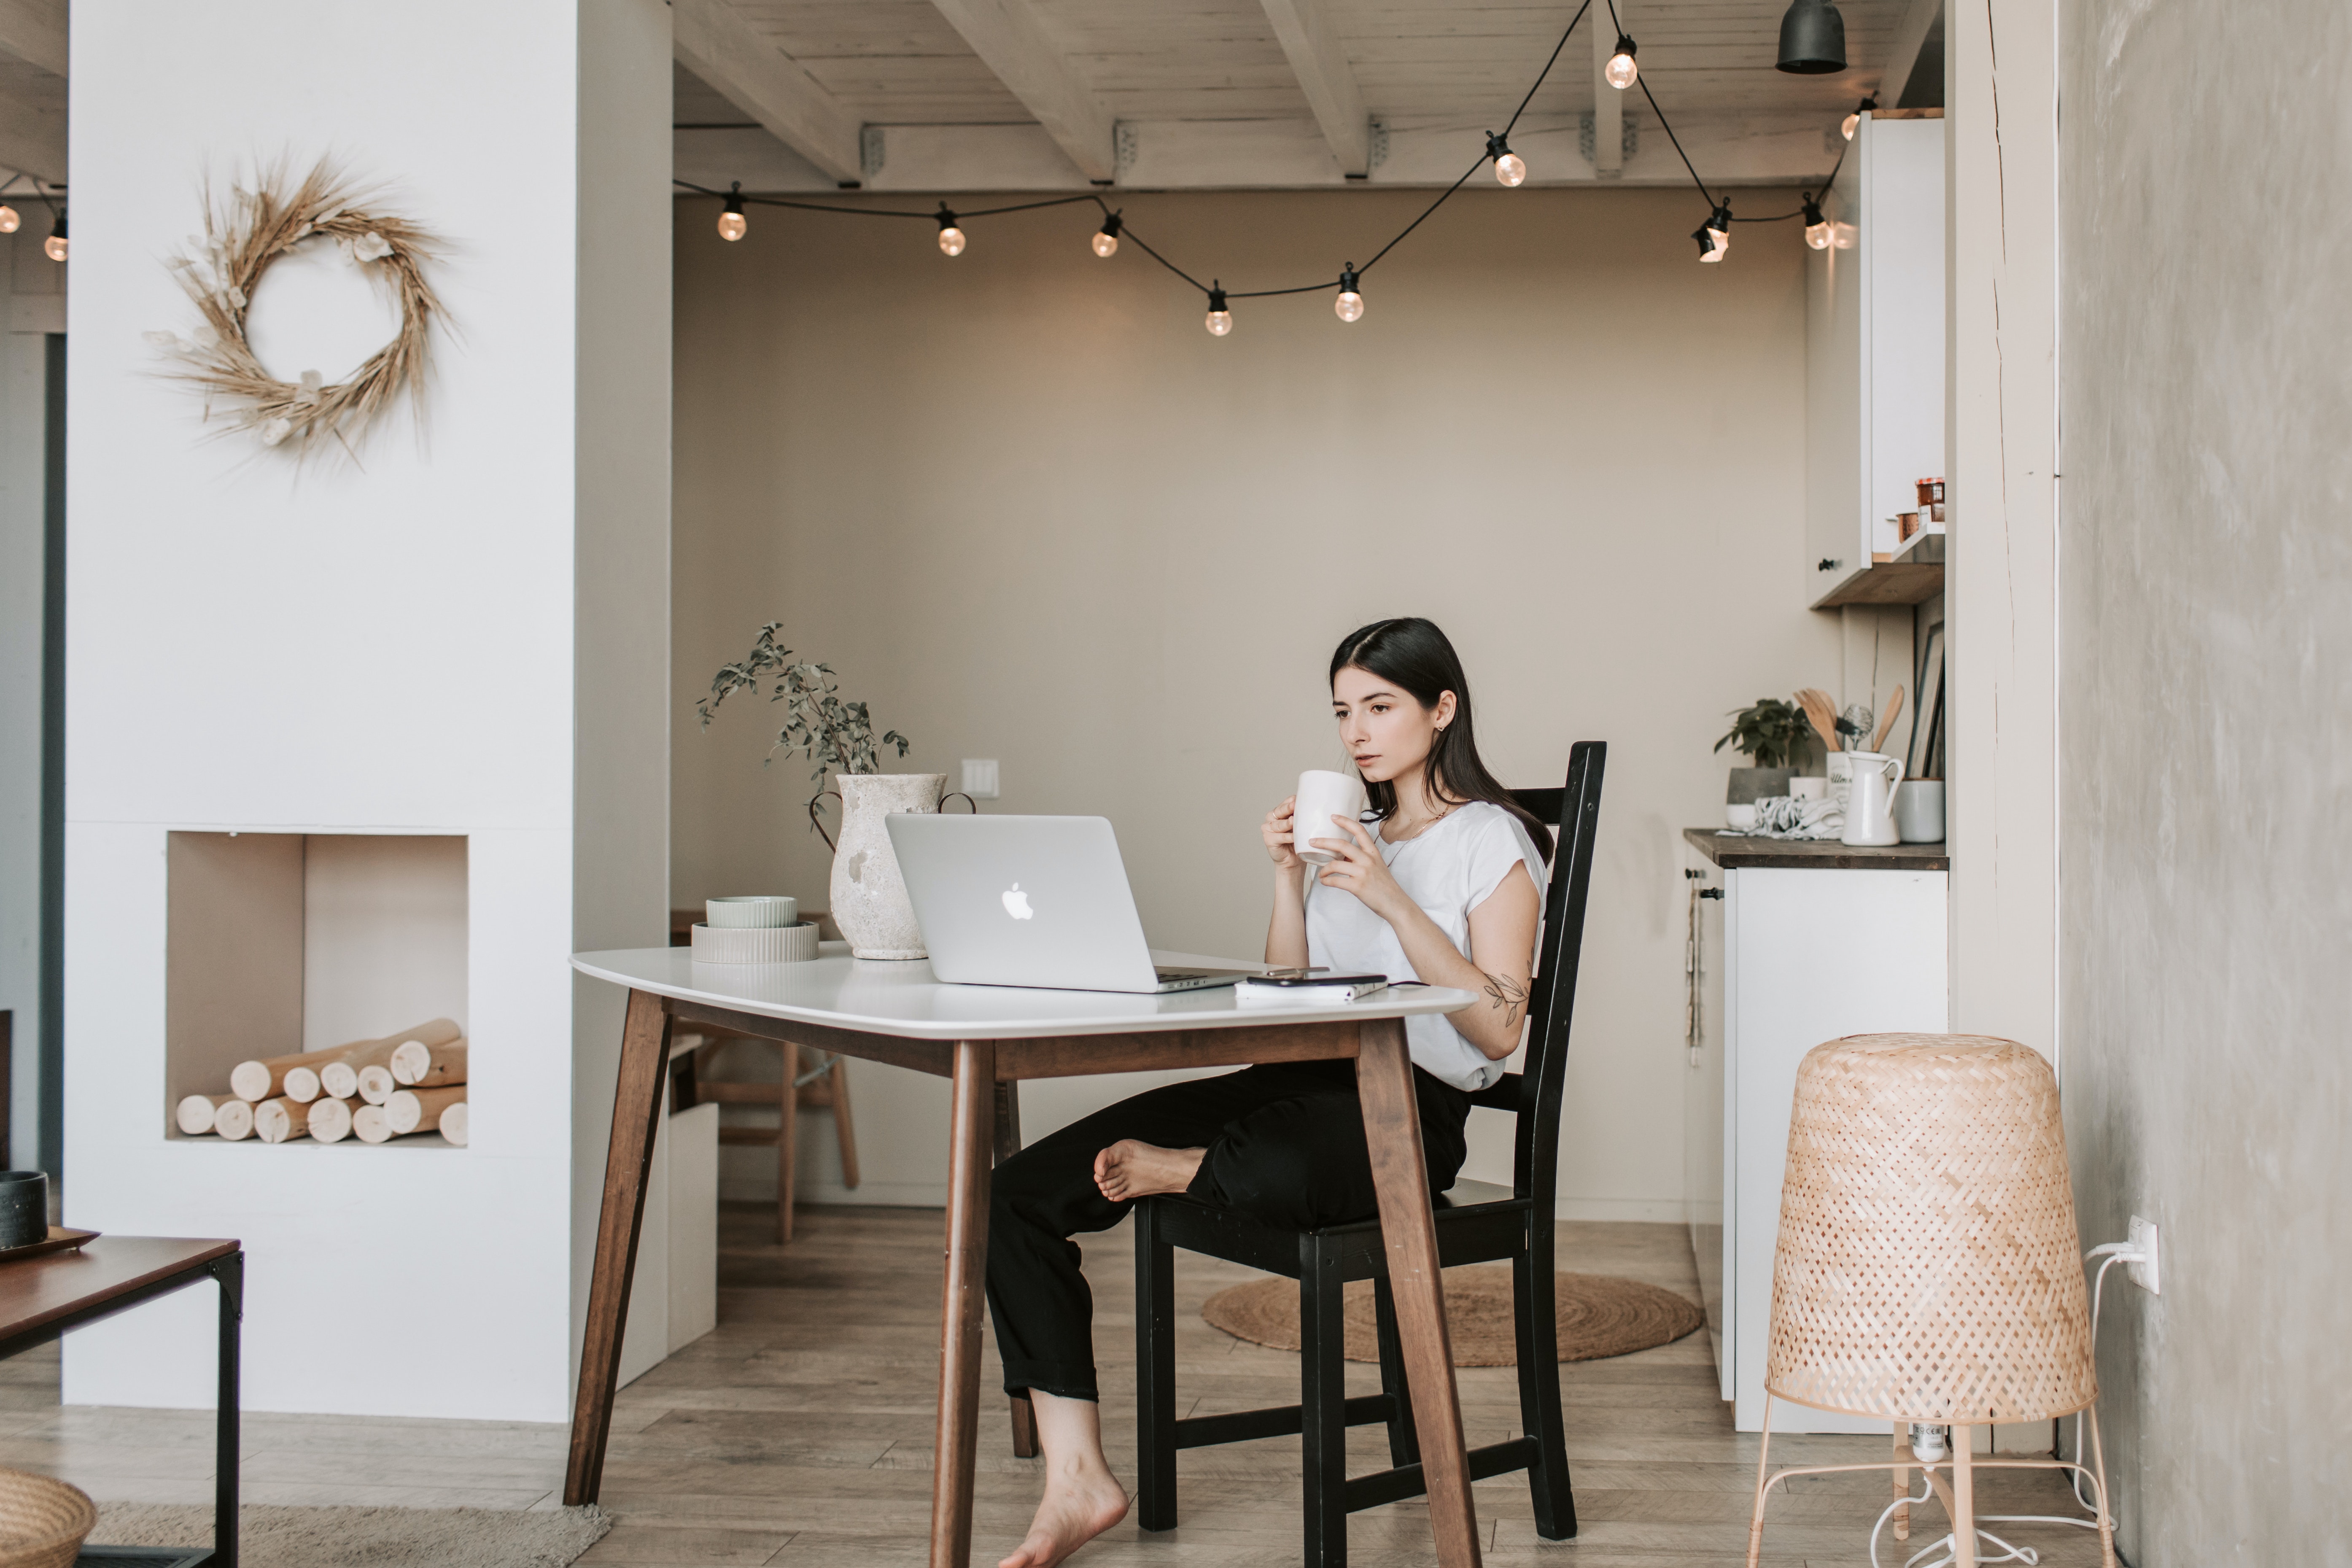 Mujer sentada bebiendo café en una sala con ambiente minimalista